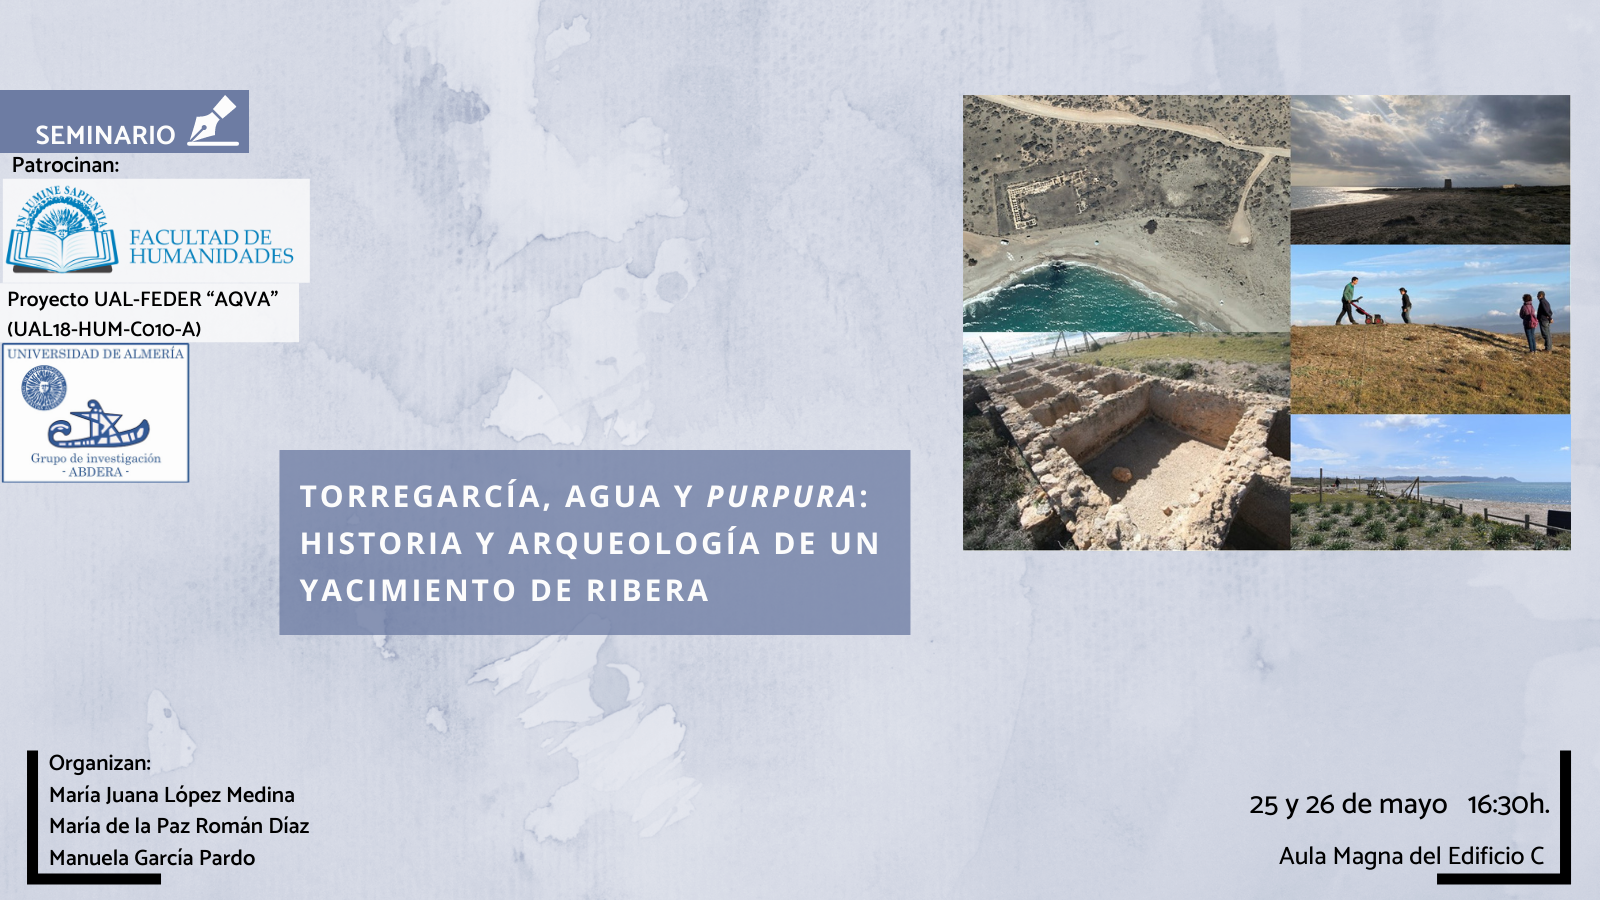 La Facultad de Humanidades y el grupo de investigación Abdera organizan el seminario titulado «Torregarcía, agua y purpura: historia y arqueología de un yacimiento de la ribera».